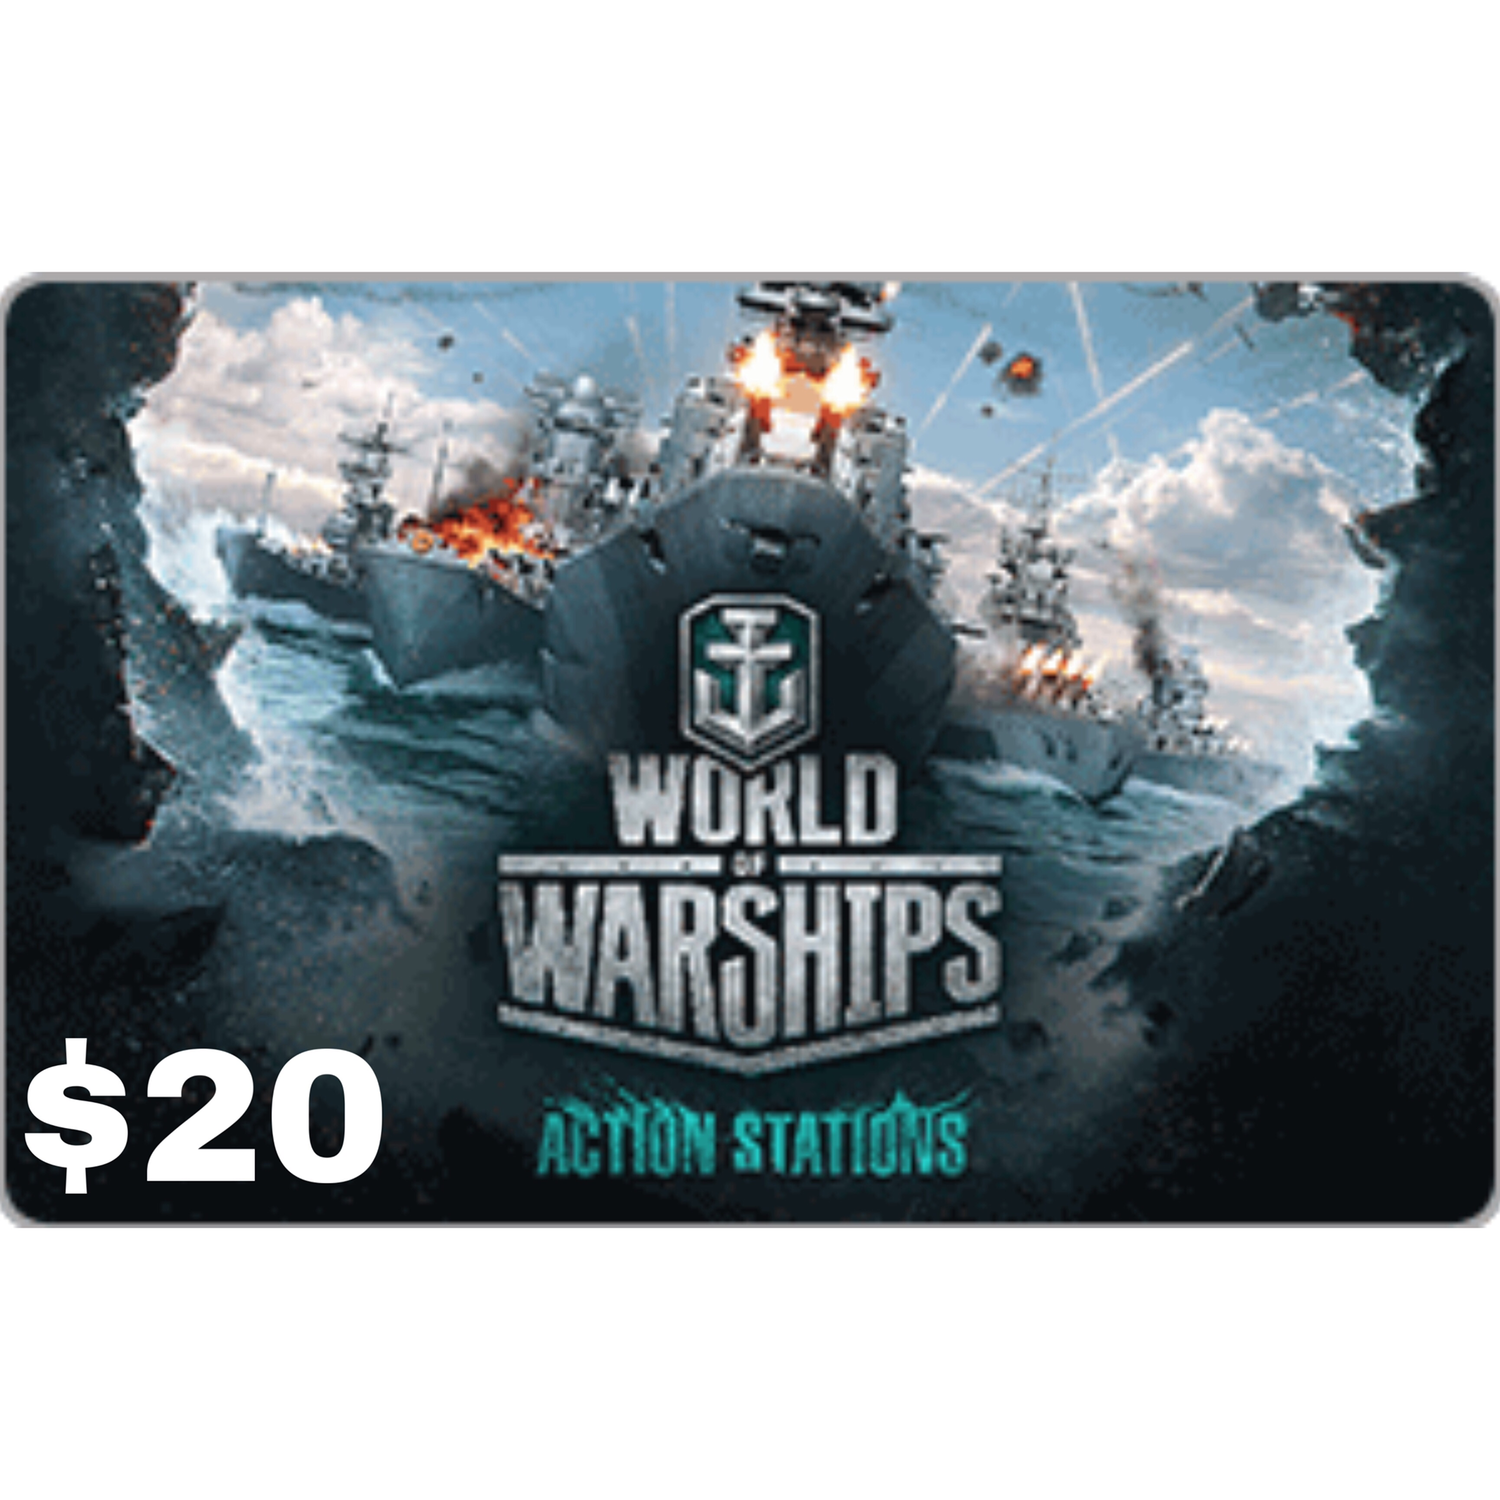 world of warships 4 year anniversary bonus codes